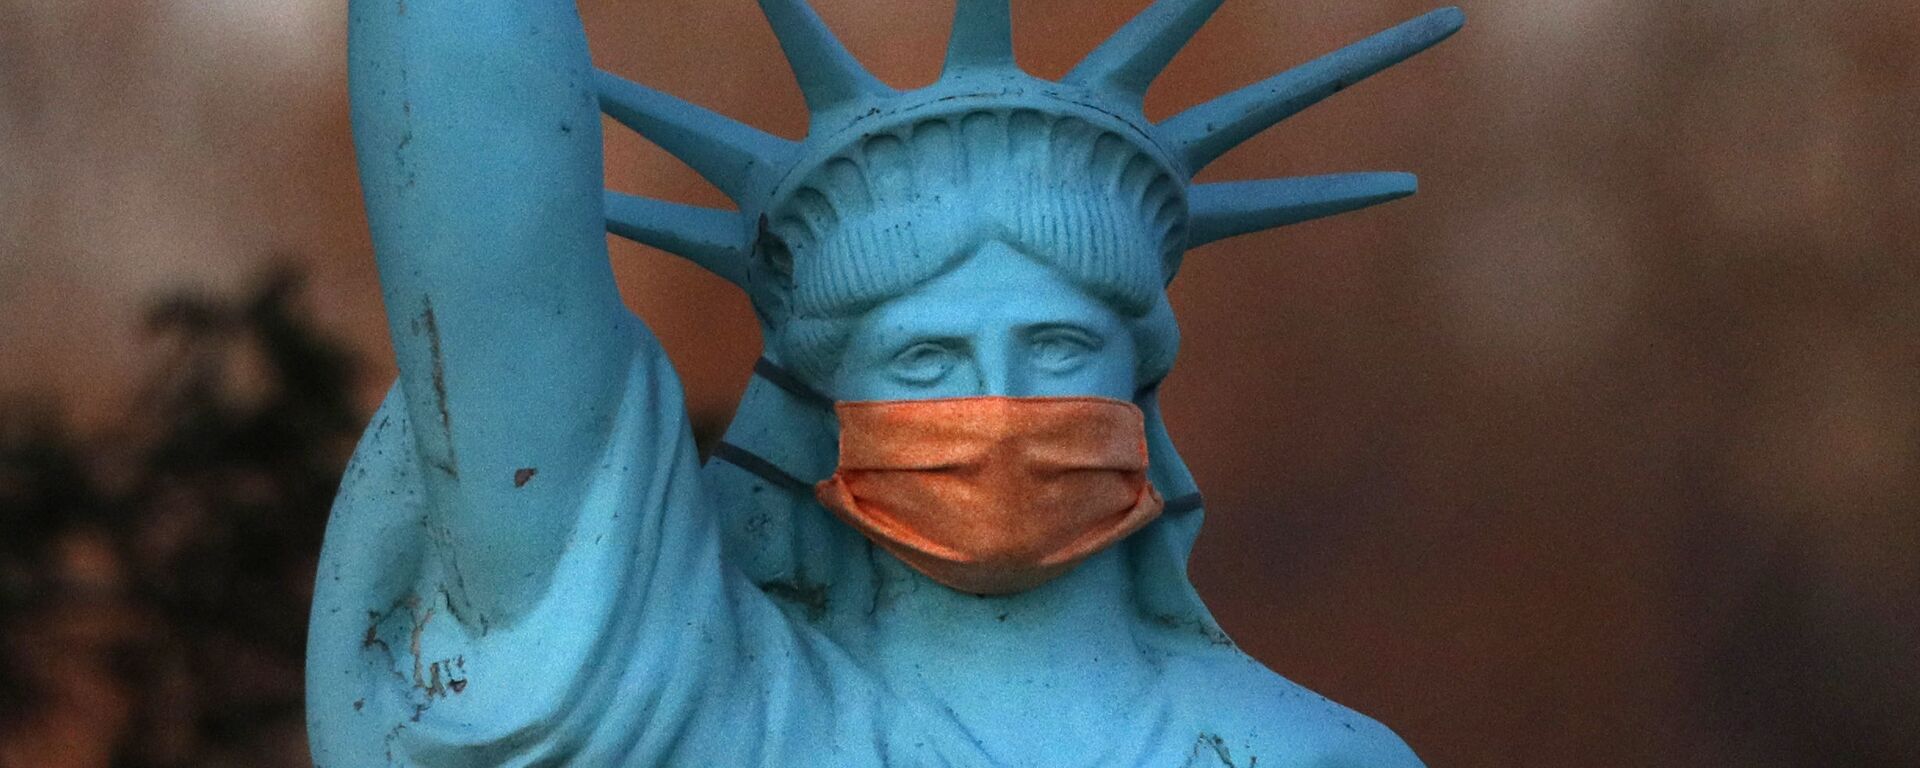 Реплика Статуи Свободы в защитной маске в штате Мэн, США - Sputnik Молдова, 1920, 08.03.2021